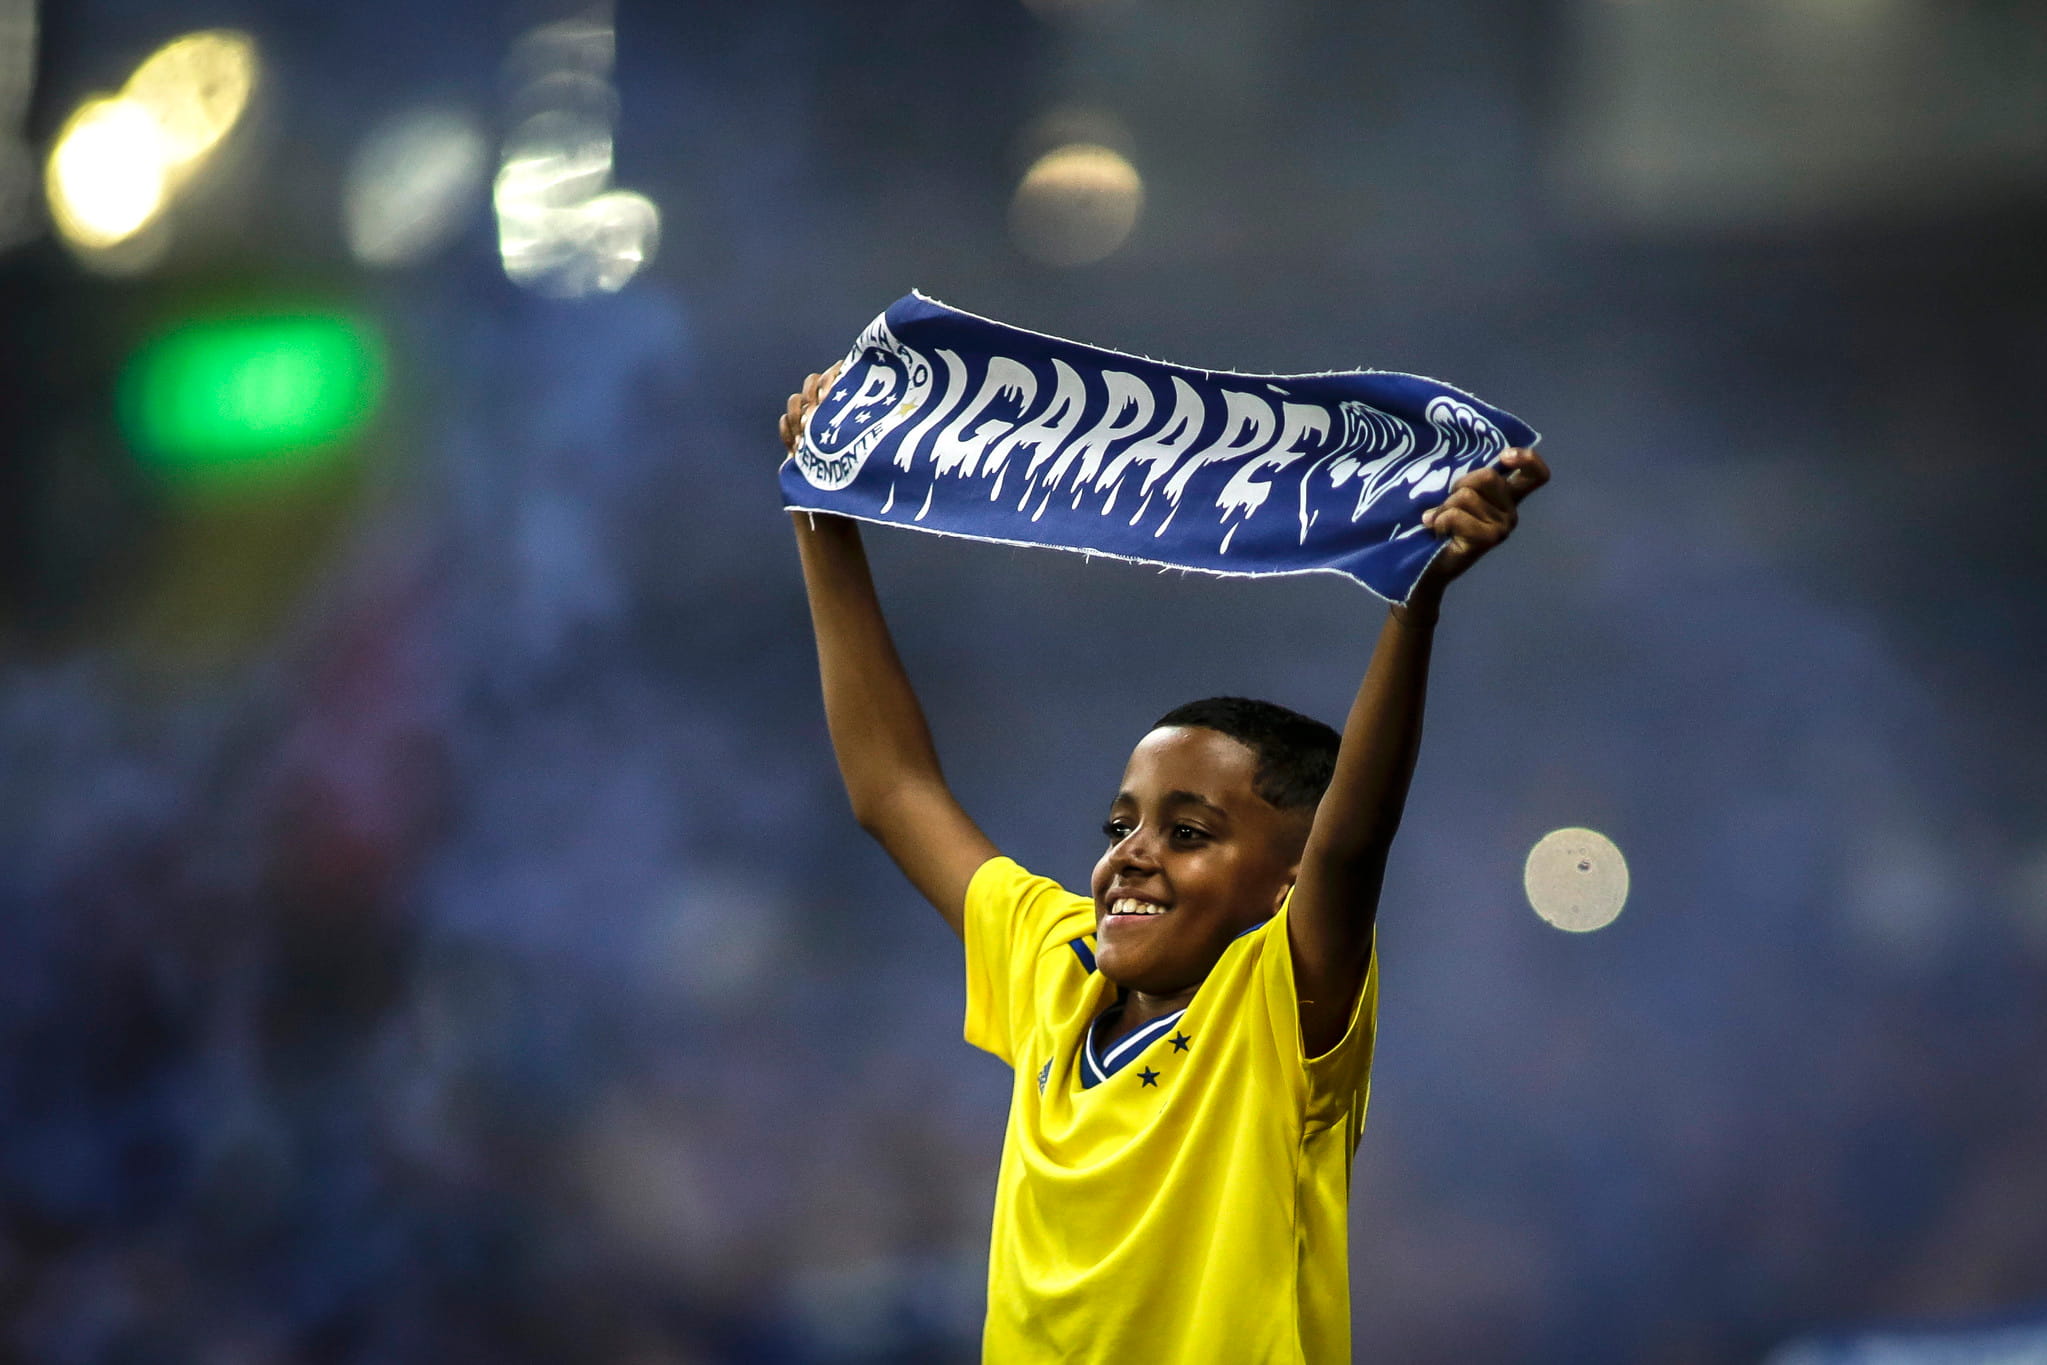 Saiba como assistir aos jogos do Cruzeiro no Campeonato Mineiro 2022 em O  TEMPO